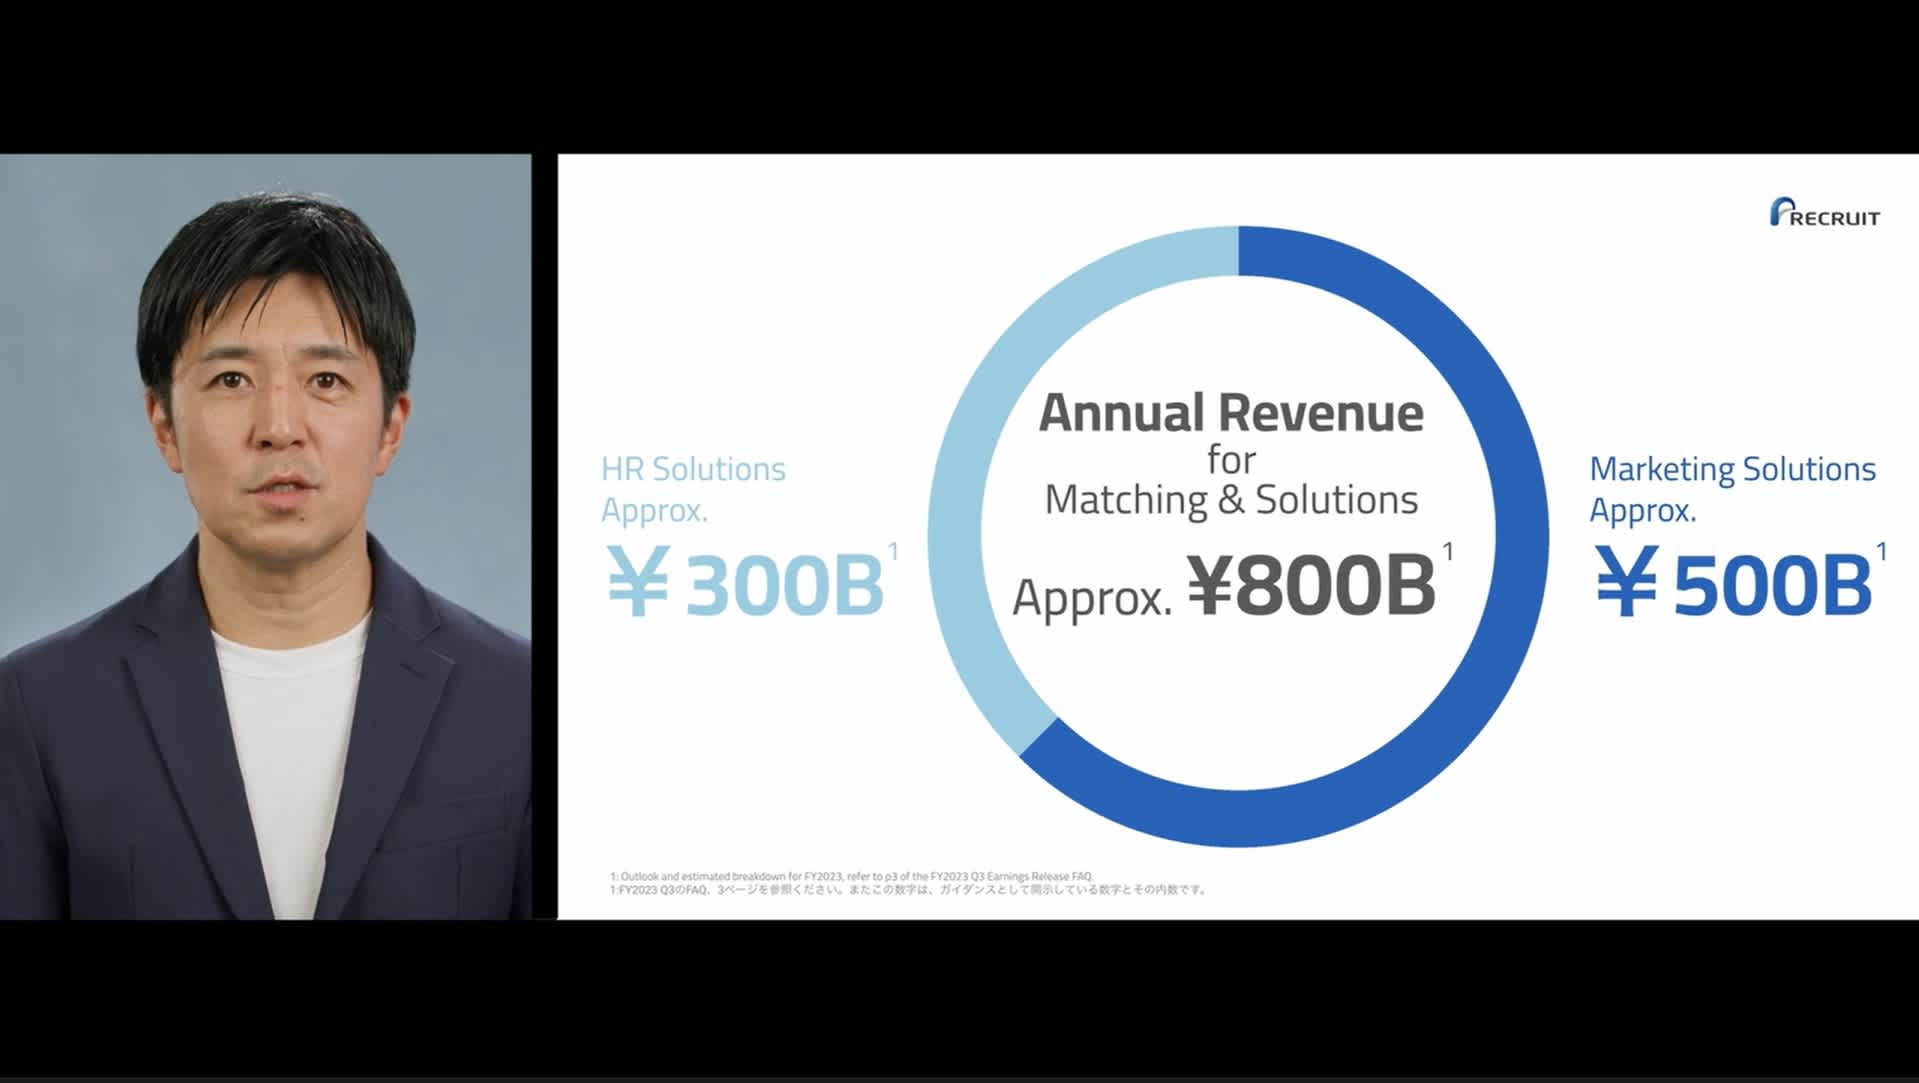 マッチング＆ソリューション事業の年間売上が約8,000億円であることを説明するスライドと北村吉弘